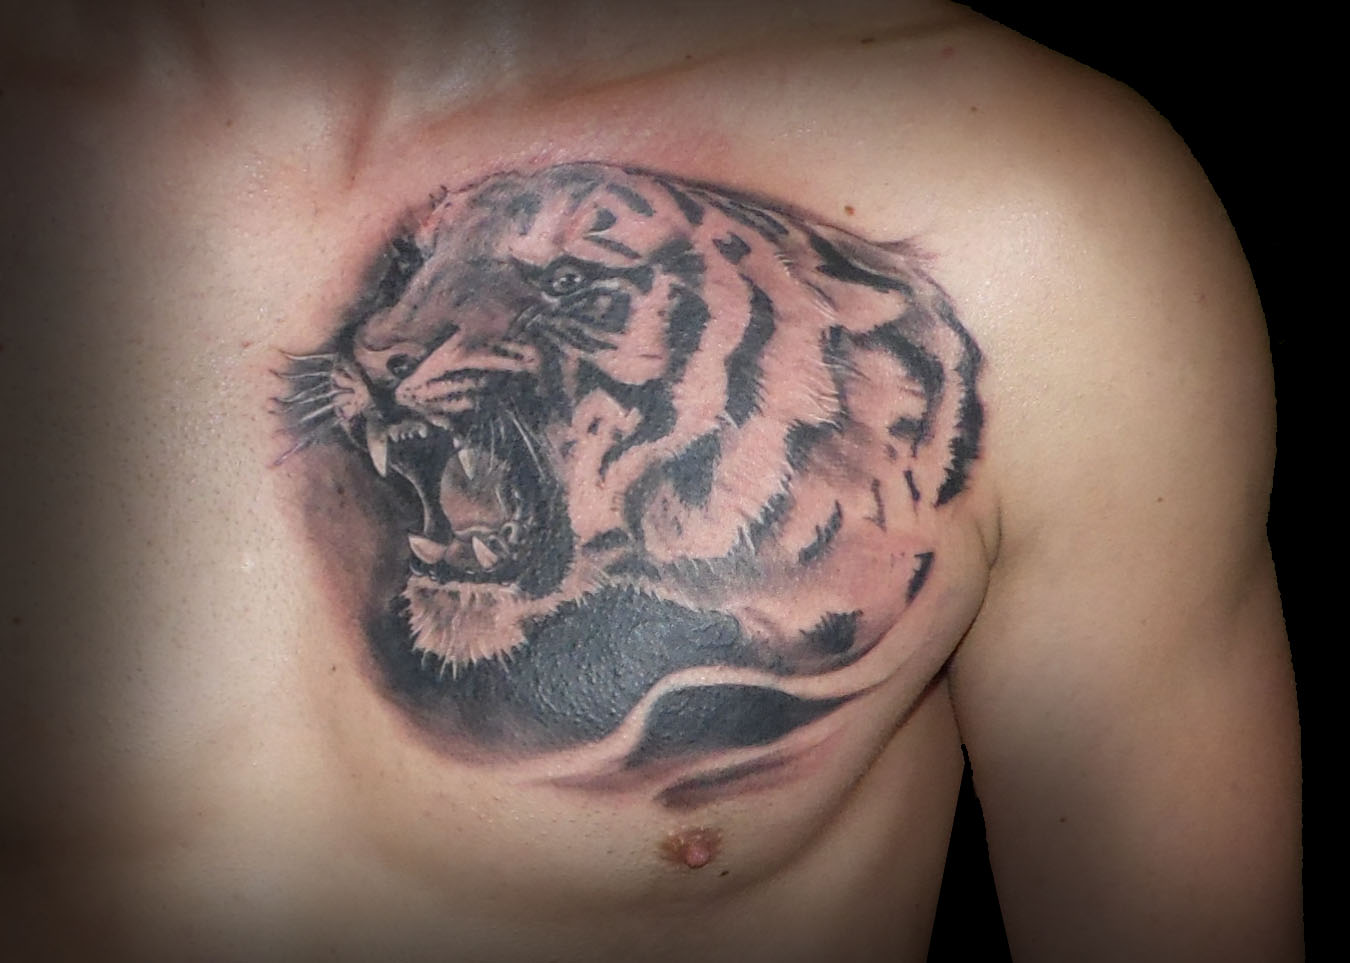 tatuaje tigre, tattoos huesca, tatuajes huesca, tattoo tiger, huesca tattoos, jaca tattoos, tatuajes en huesca, tattoo, 